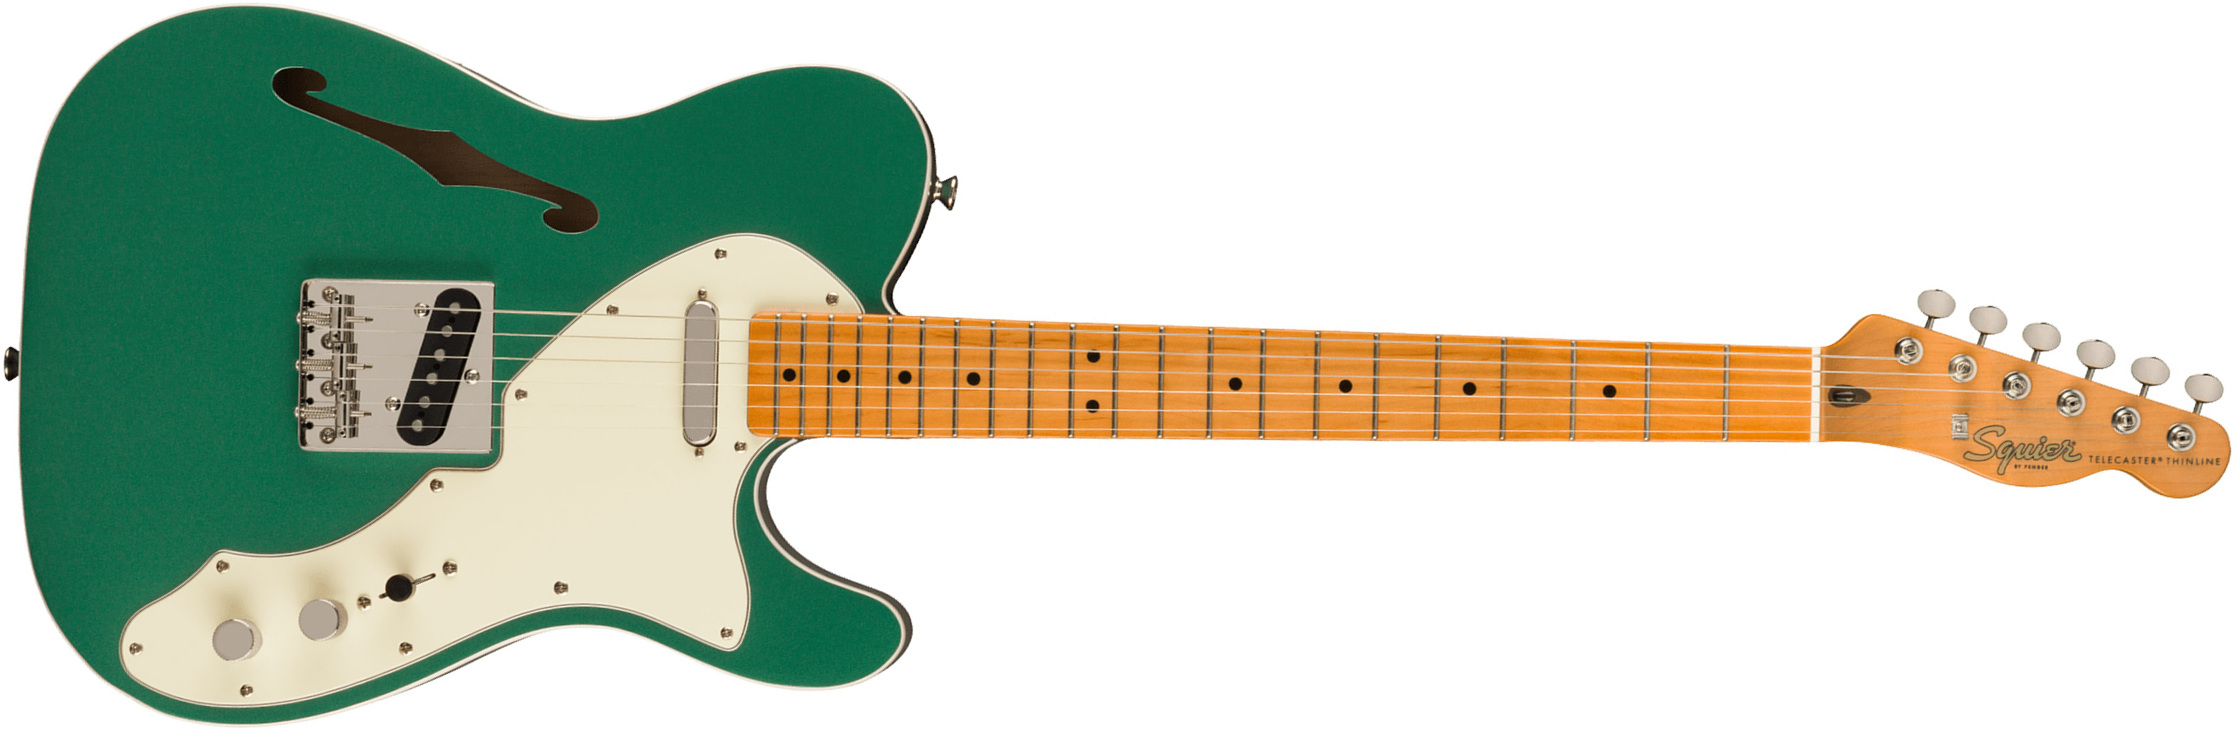 Squier Tele '60s Thinline Parchment Pickguard Classic Vibe Fsr 2s Ht Mn - Sherwood Green - Guitarra eléctrica con forma de tel - Main picture